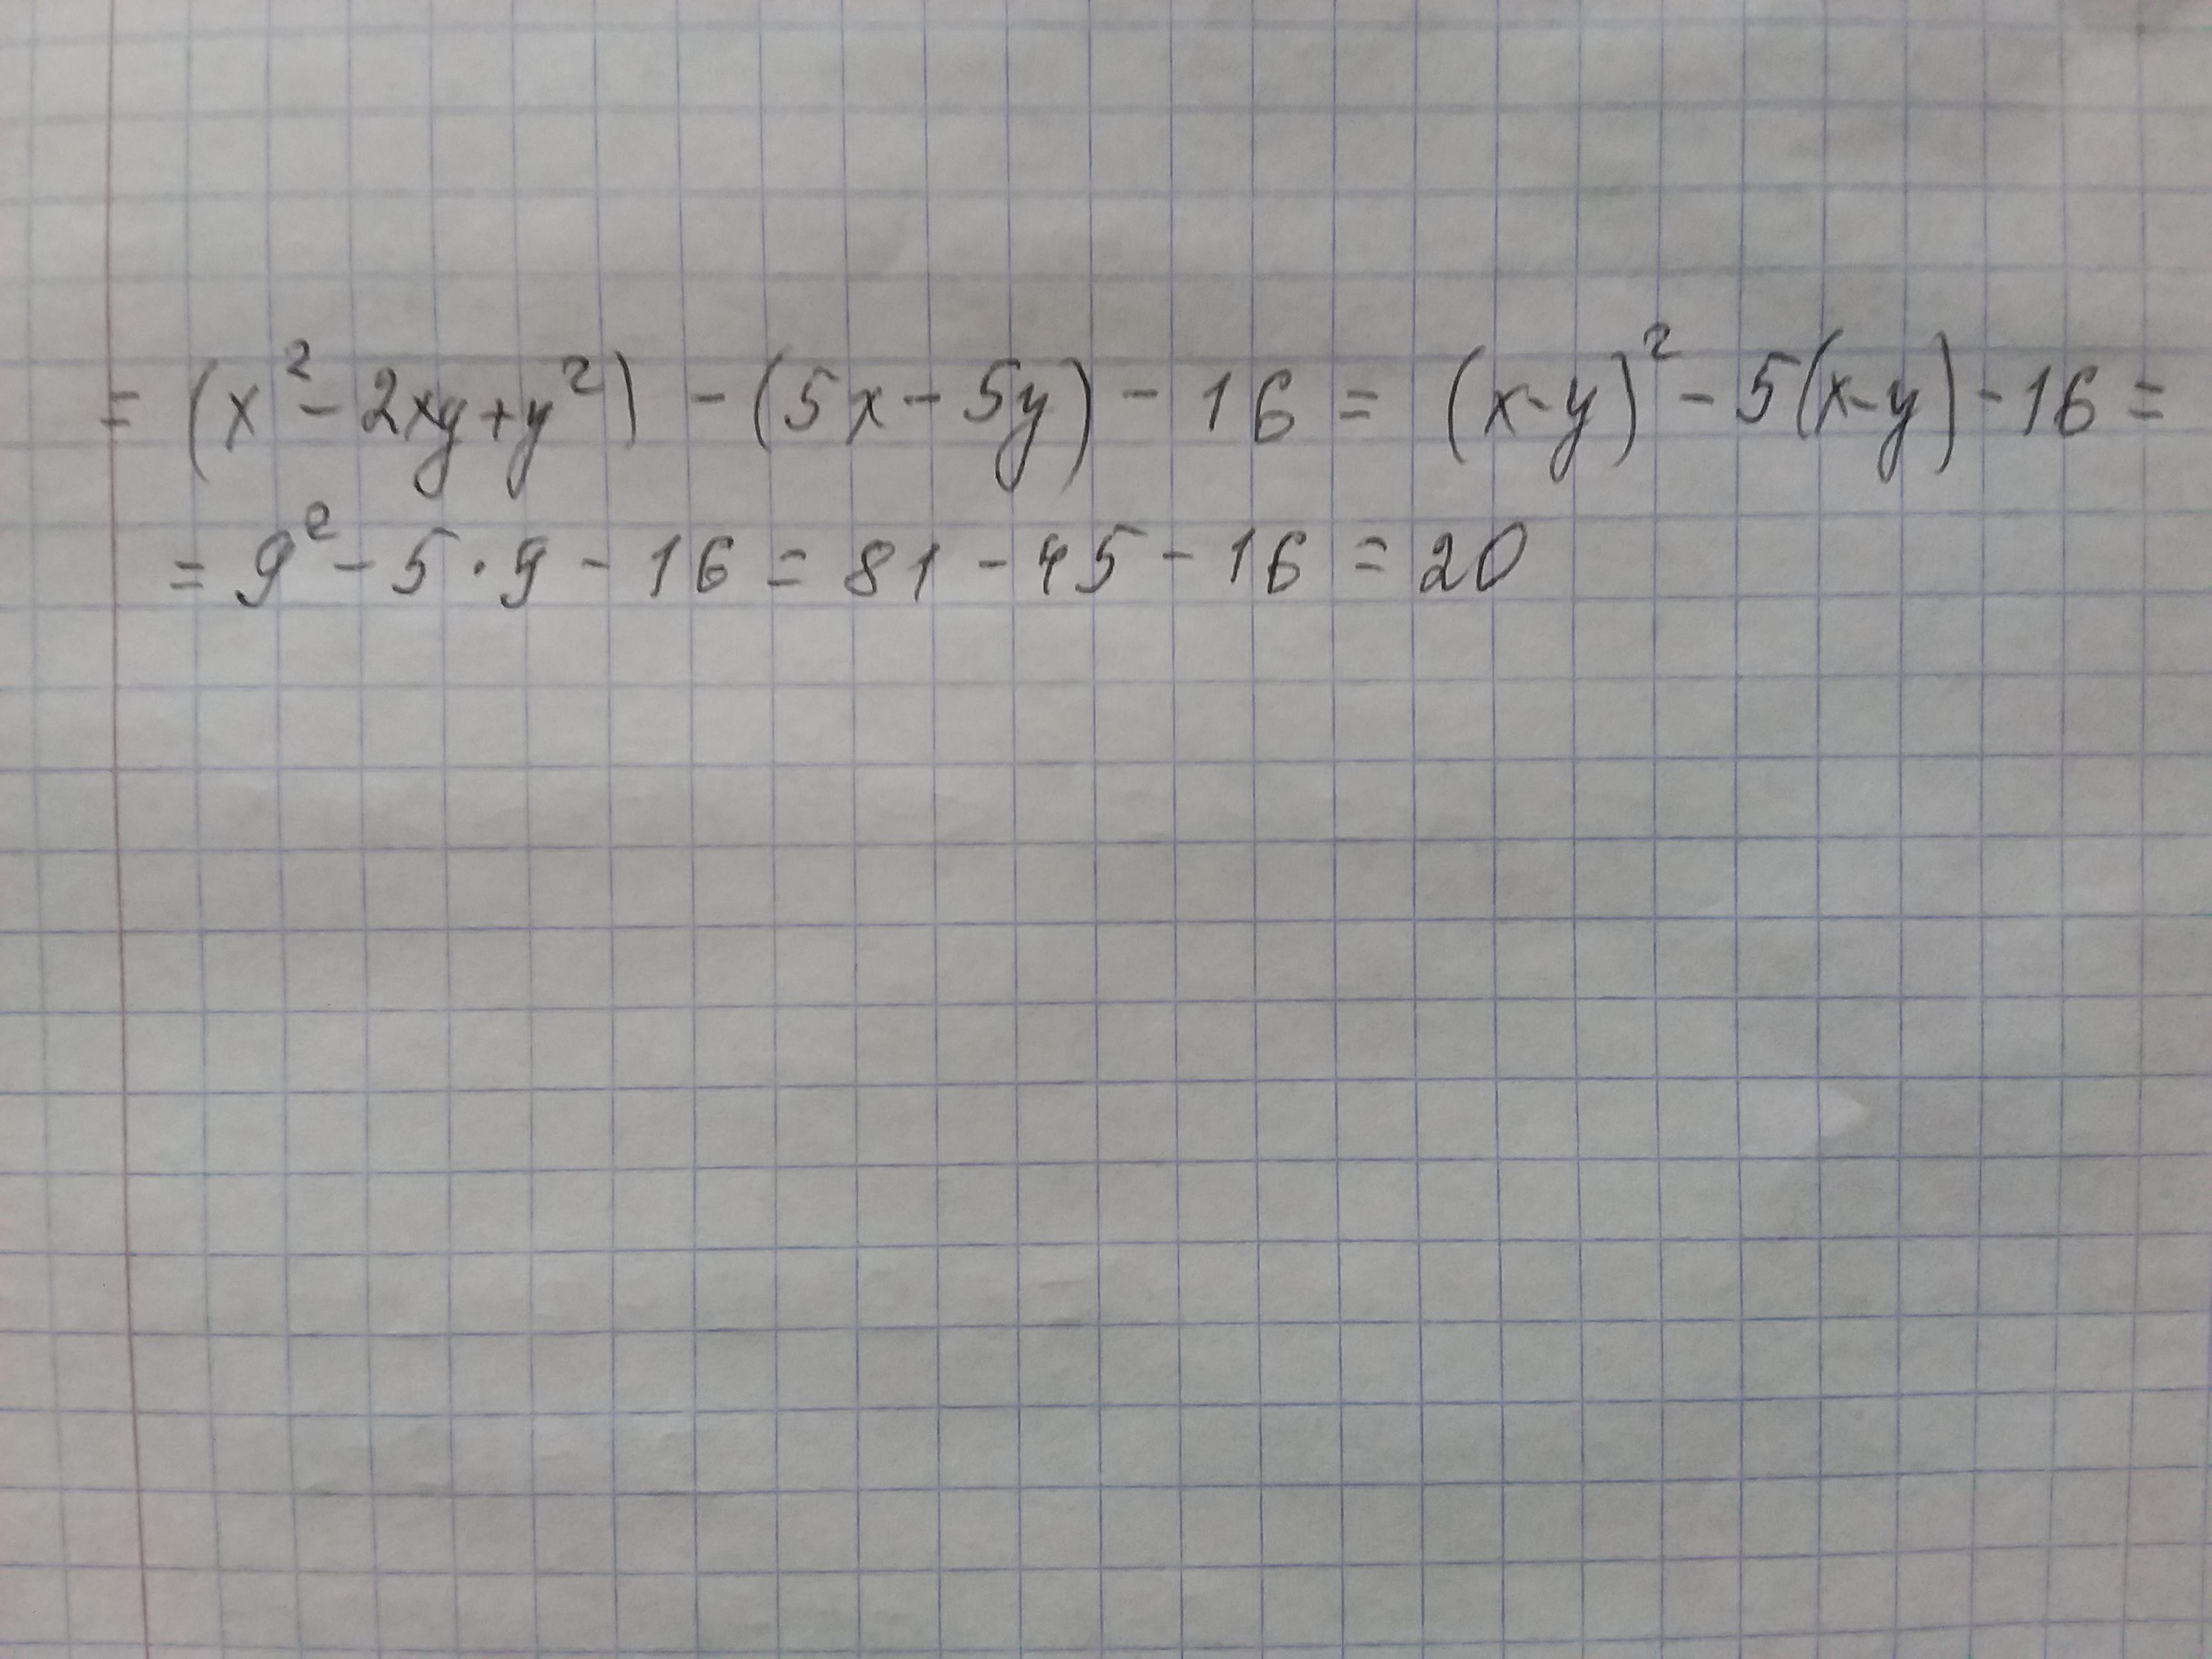 16 x2 2xy y2. X^2-2xy+y^2-5x+5y-16. X2-2xy+y2-5x+5y-16 если x-y 9. Найти значение выражения x+y : XY. X2+2xy+y2.